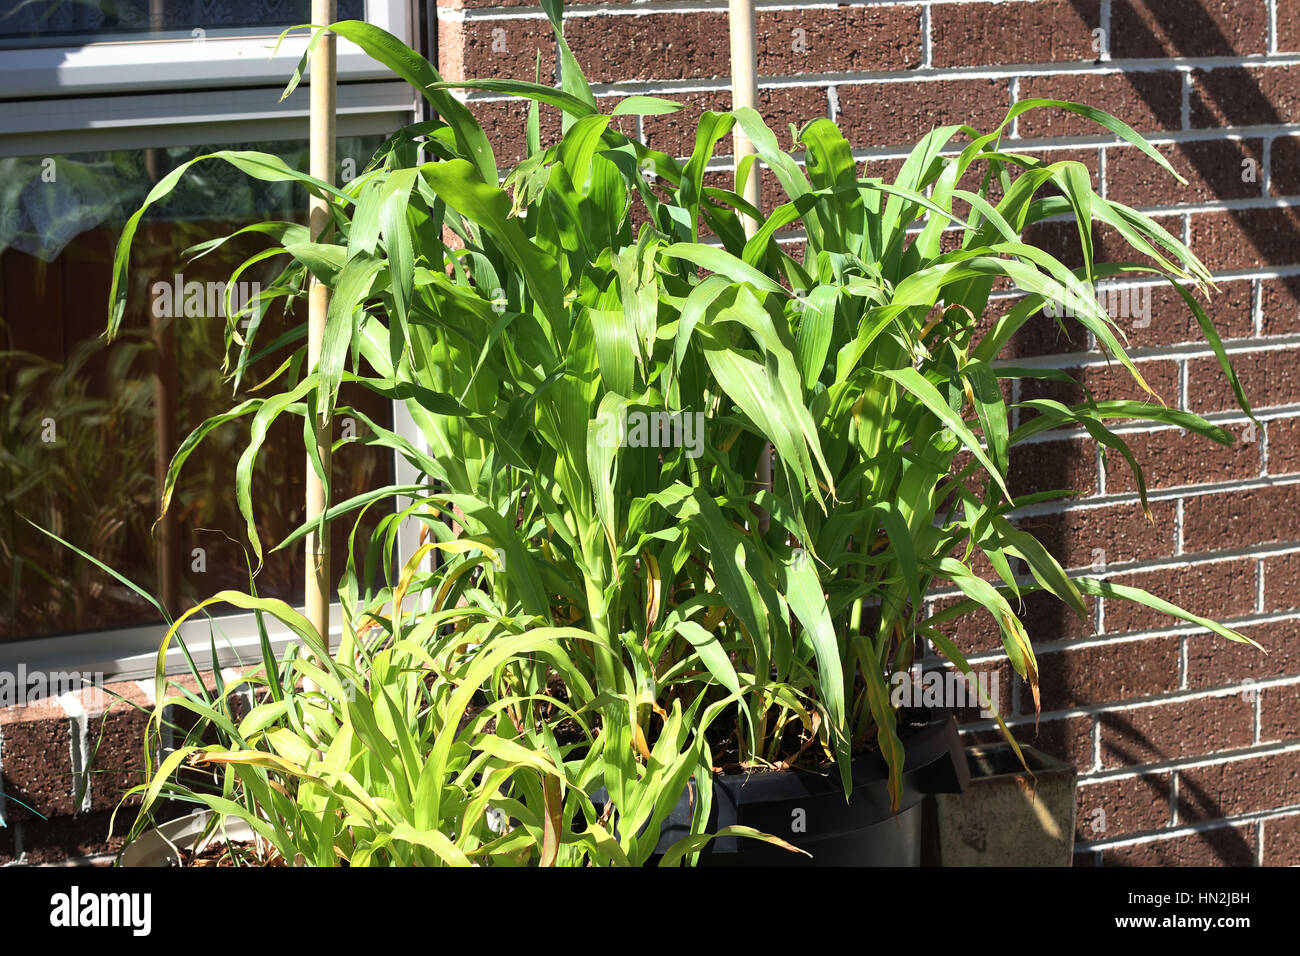 Anbau von Mais in einen Topf Stockfotografie - Alamy